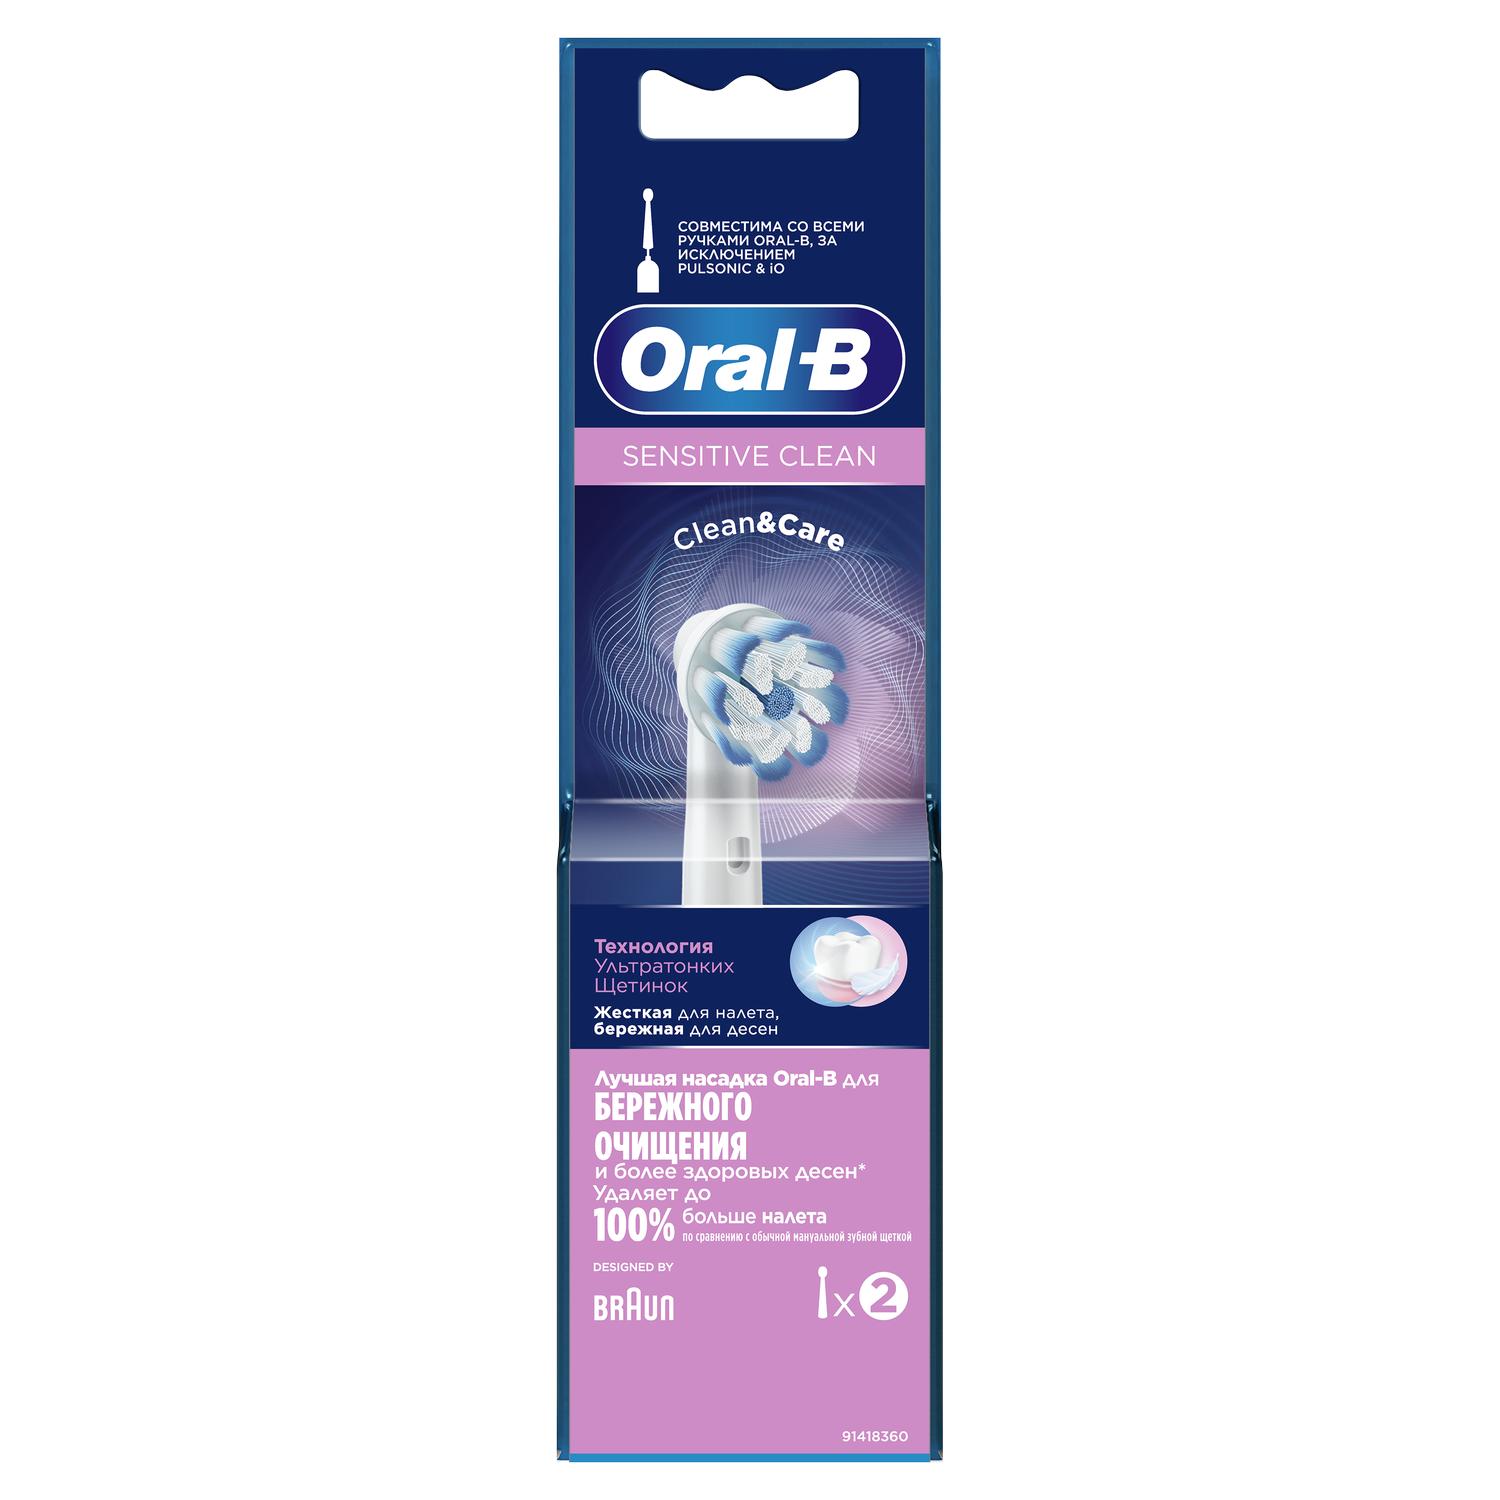 Орал-Б насадка для эл. зубной щетки СенсиУльтраСин EB60 №2 орал би флосс экшн насадка д эл зубной щетки 2